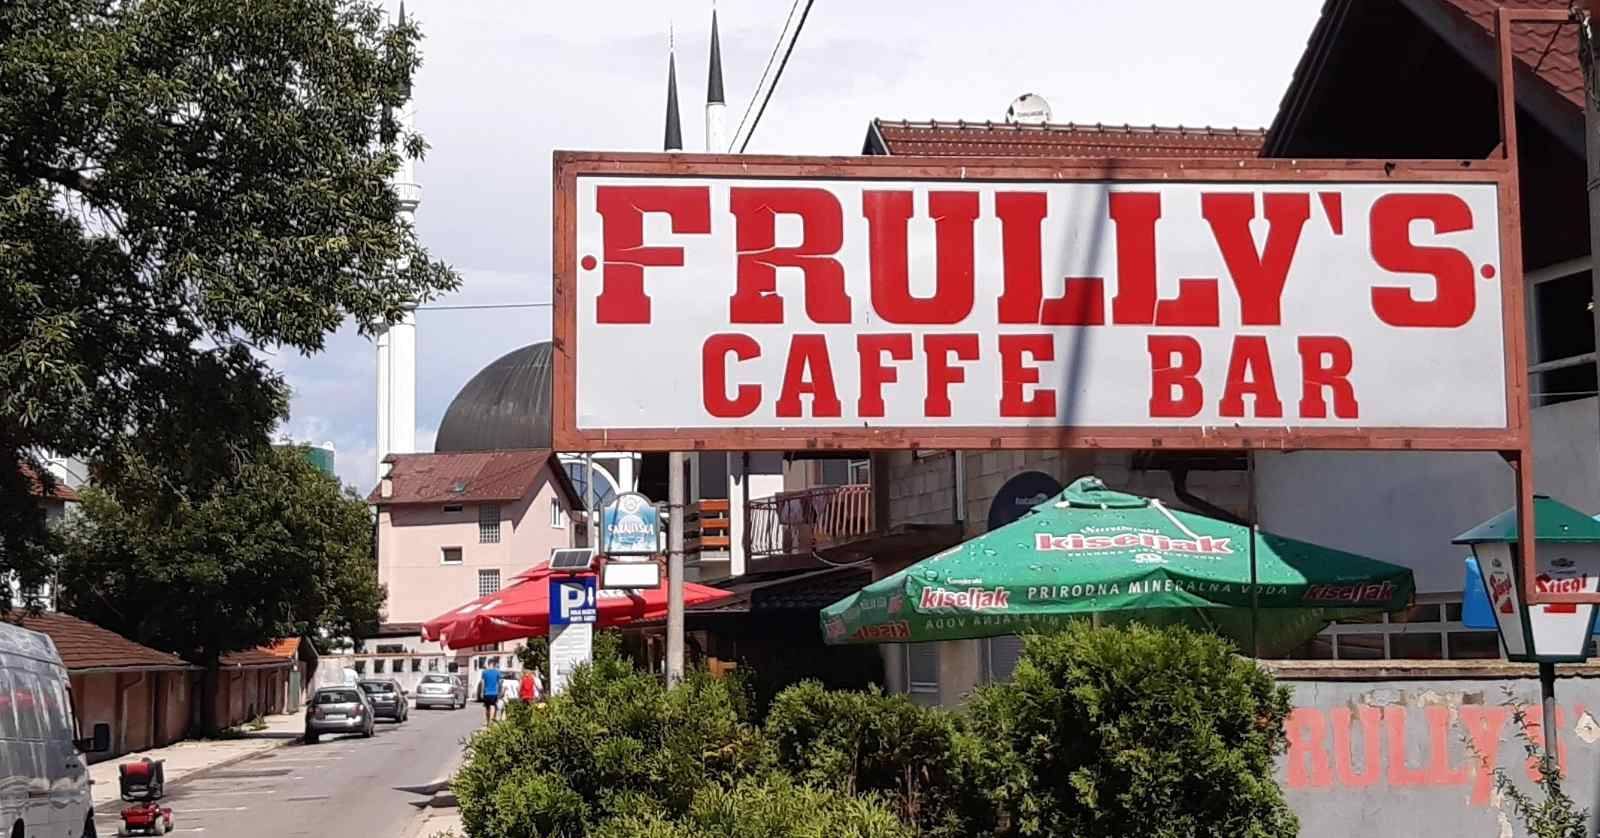 Caffe bar Frully's za djecu iz Turske i Sirije